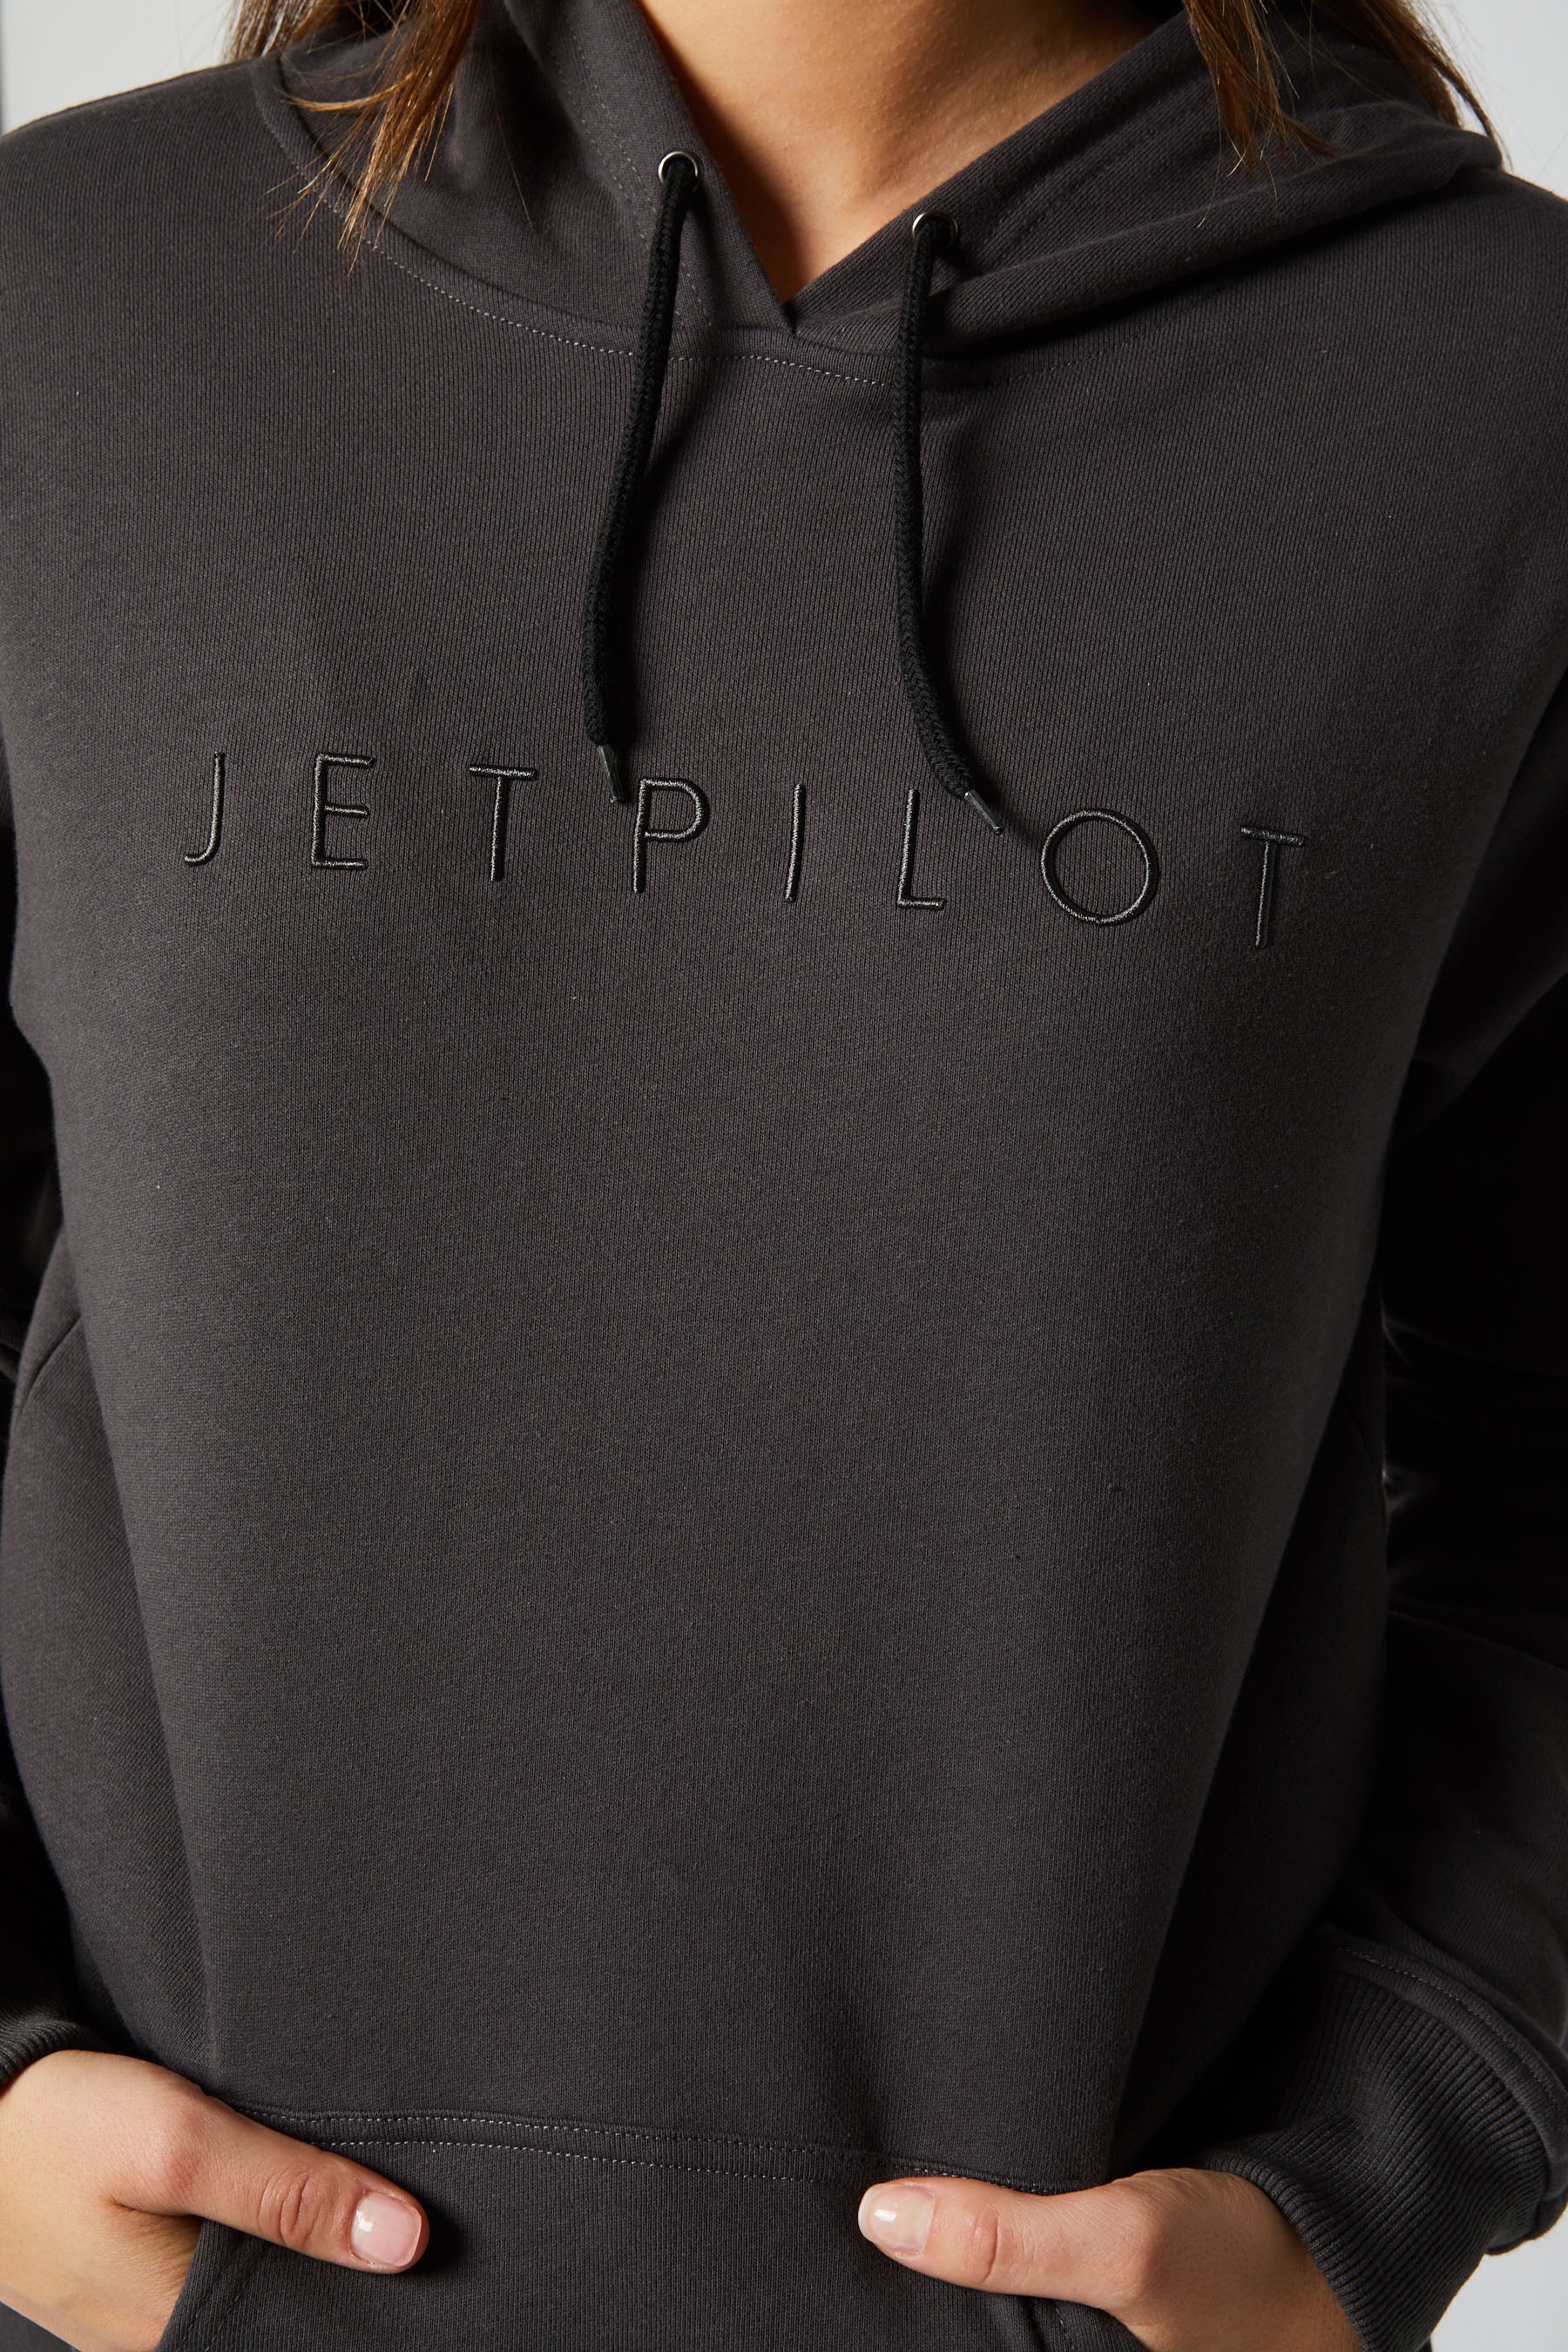 Jetpilot Simple Ladies Hoodie - Charcoal